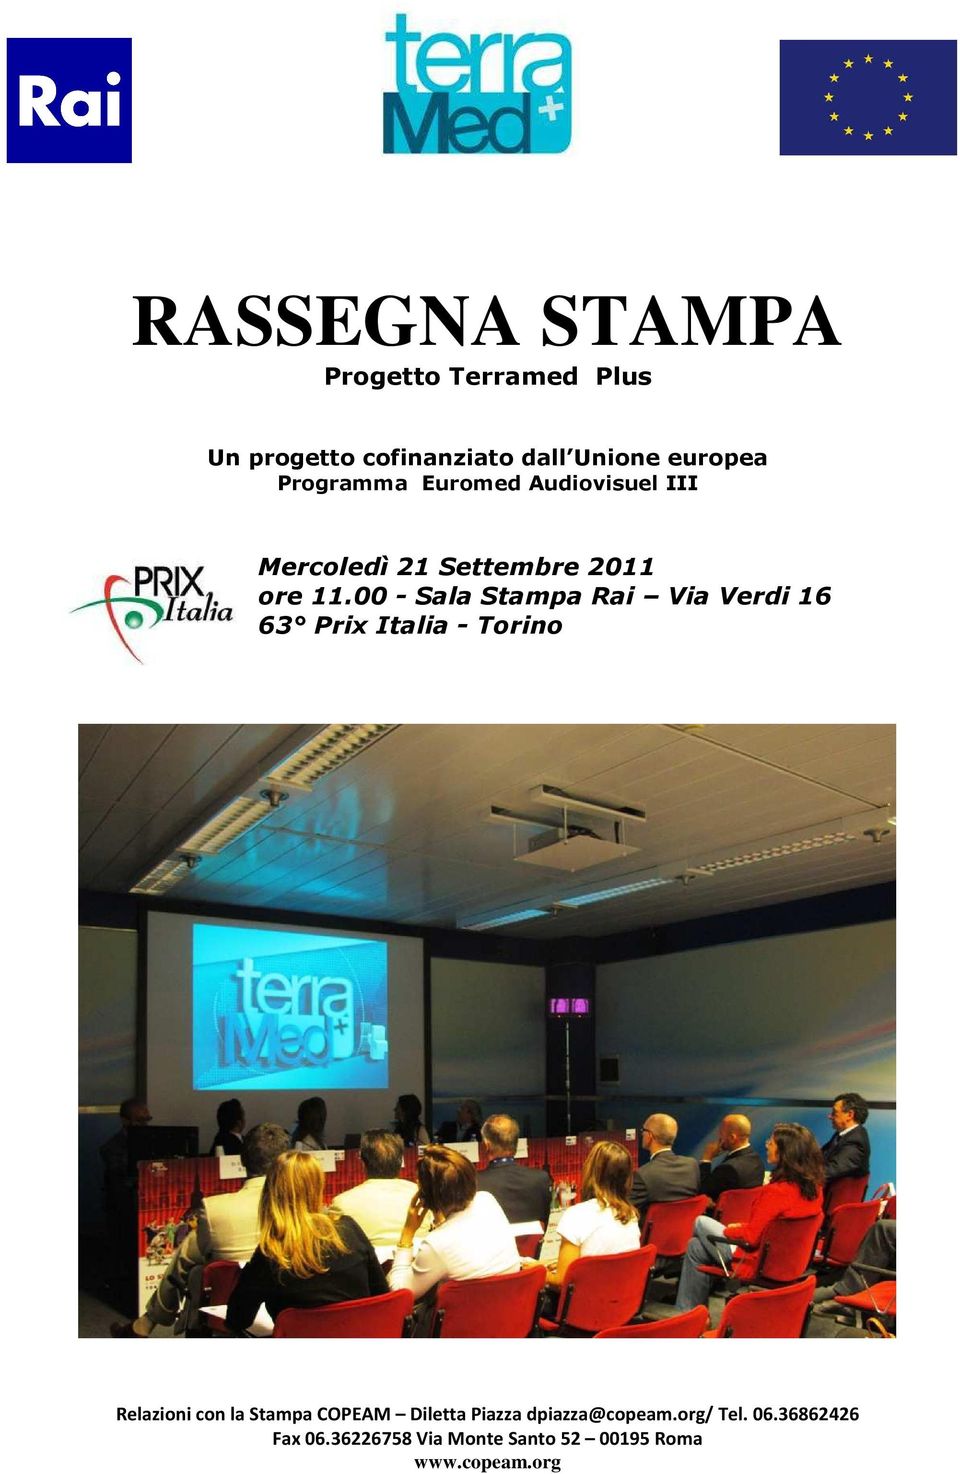 00 - Sala Stampa Rai Via Verdi 16 63 Prix Italia - Torino Relazioni con la Stampa COPEAM